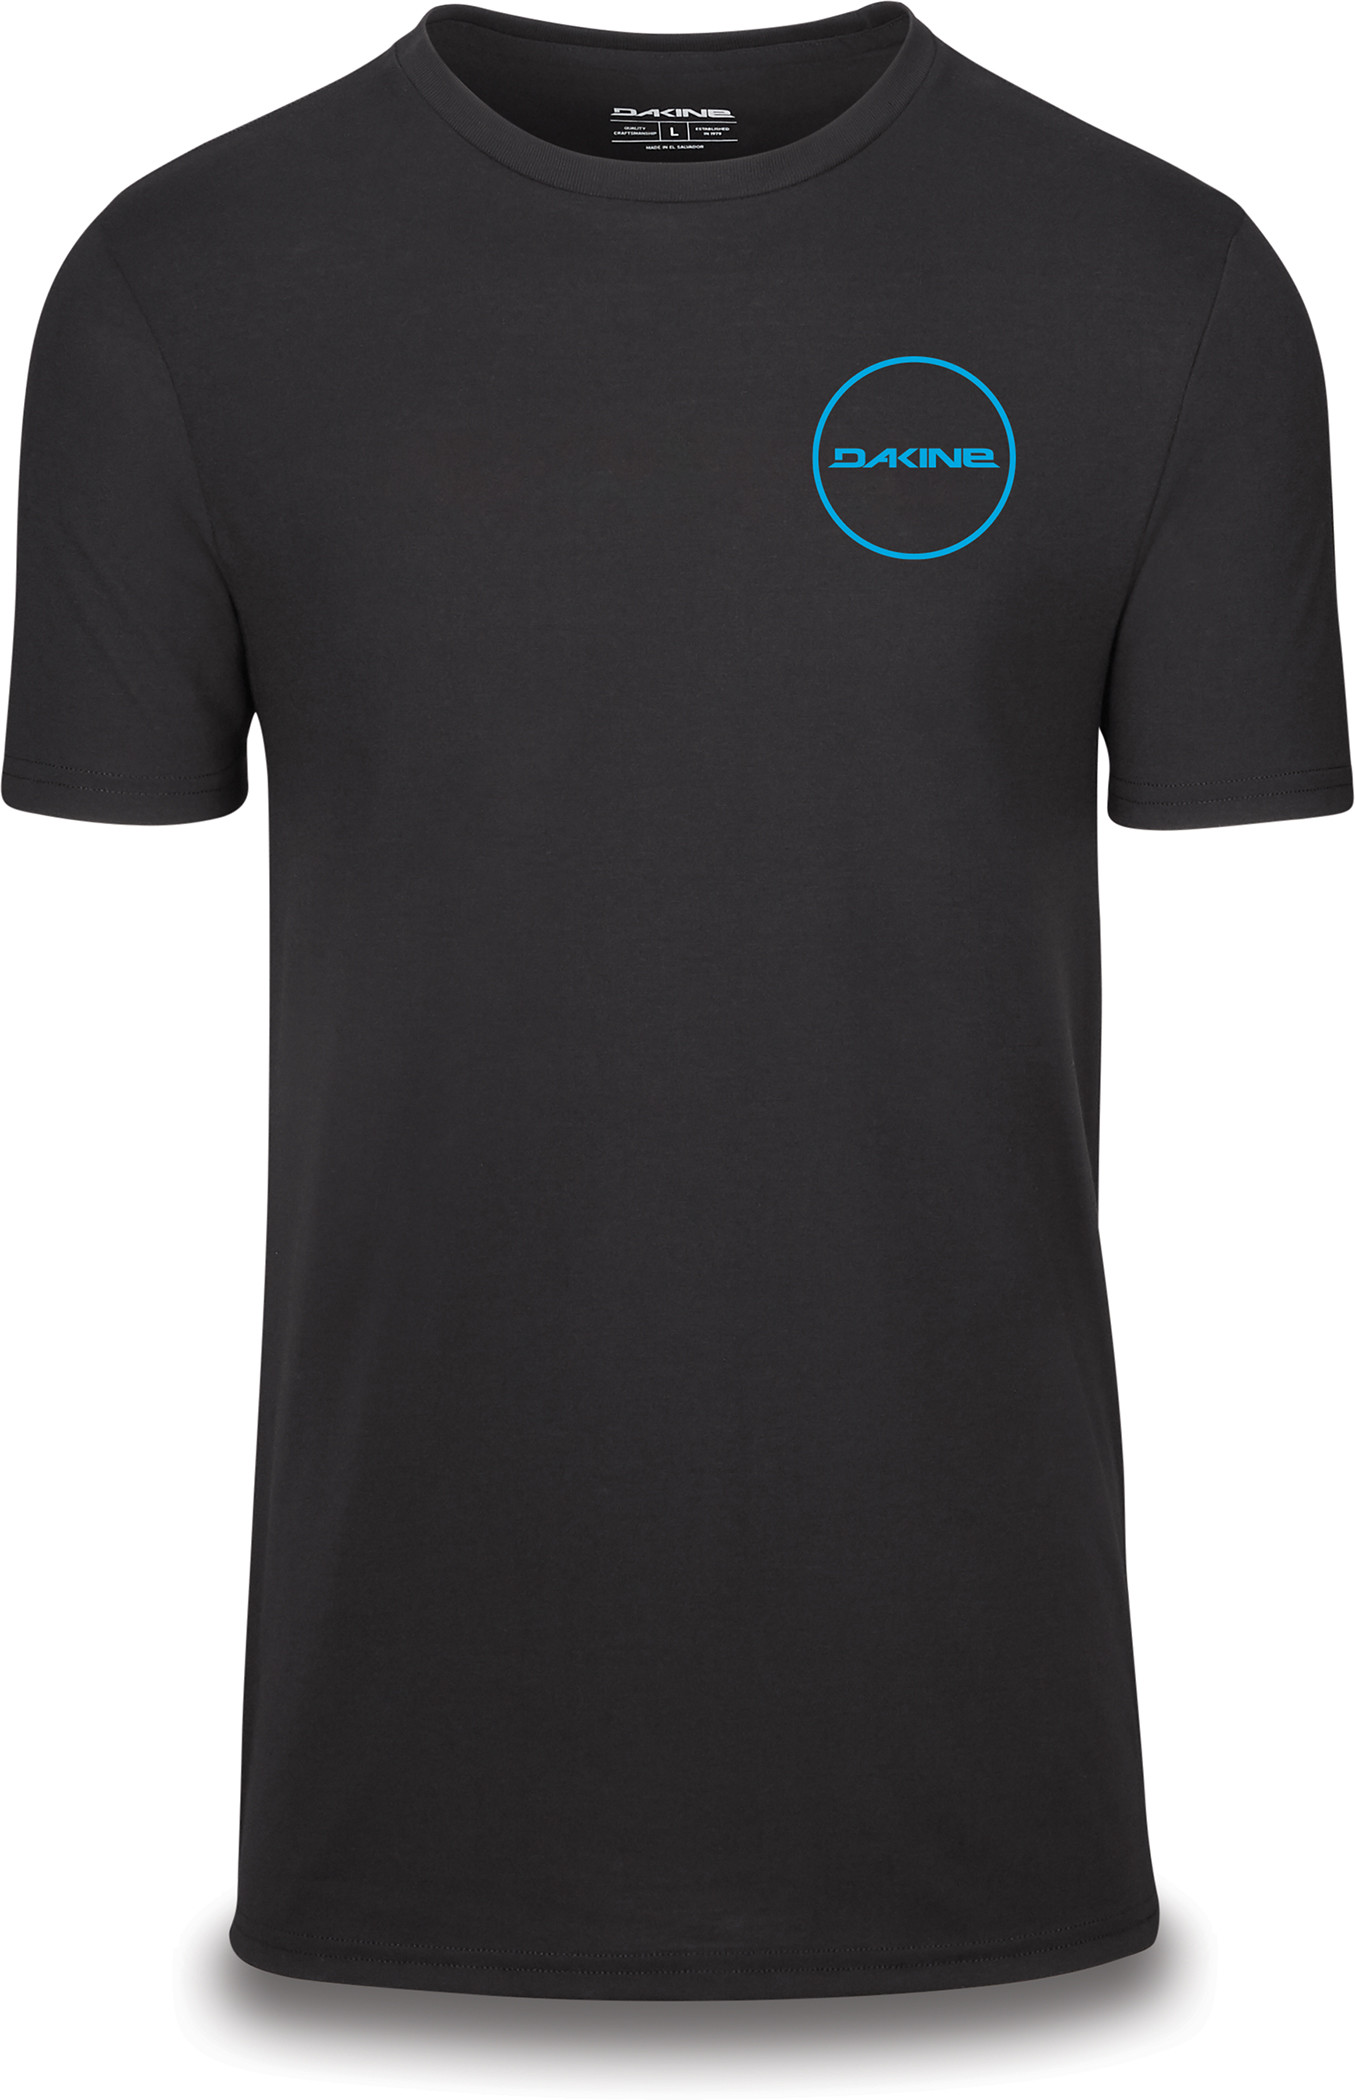 Team Player Short Sleeve Tech T-shirt